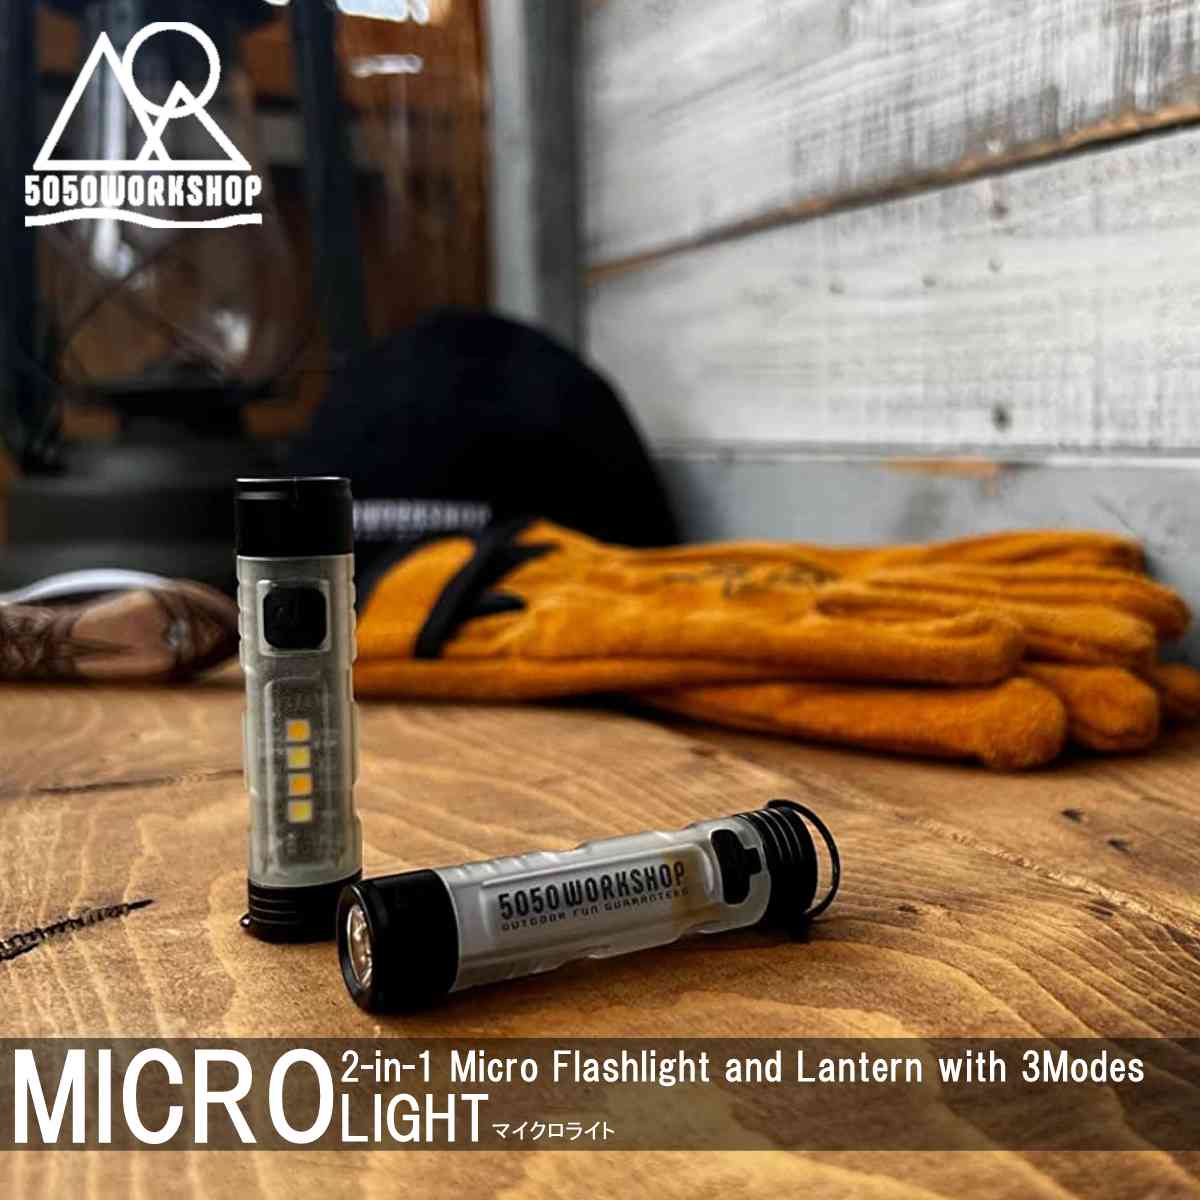 即納 5050workshop MICRO Light マイクロライト ランタン LED コンパクト多機能 ランタン 調整 昼白色 暖色 懐中電灯 電気